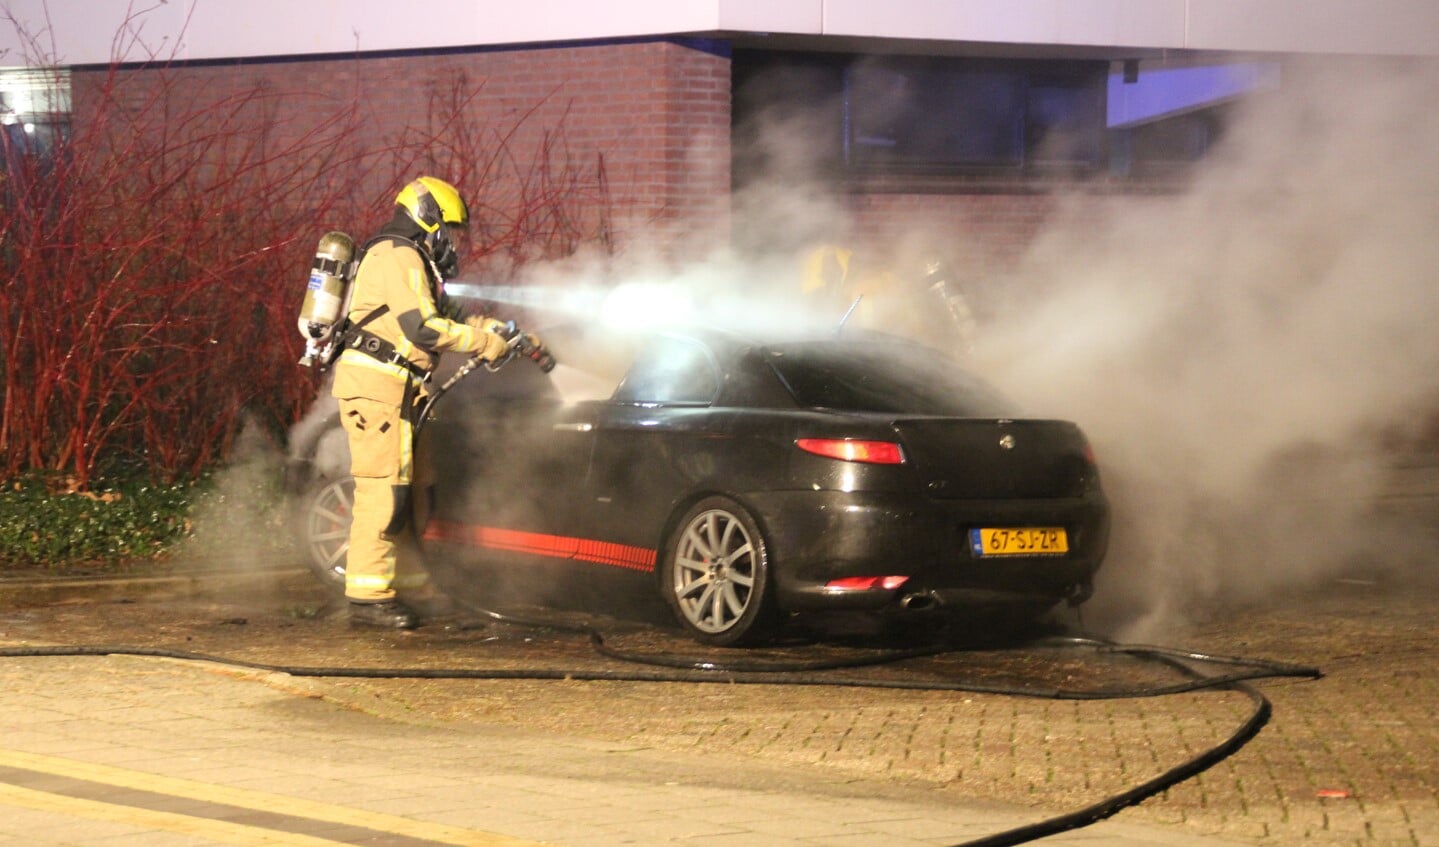 De brandweer moest een in brand gestoken auto aan de Prins J.W. Frisolaan in Leidschendam blussen (foto: Regio15).